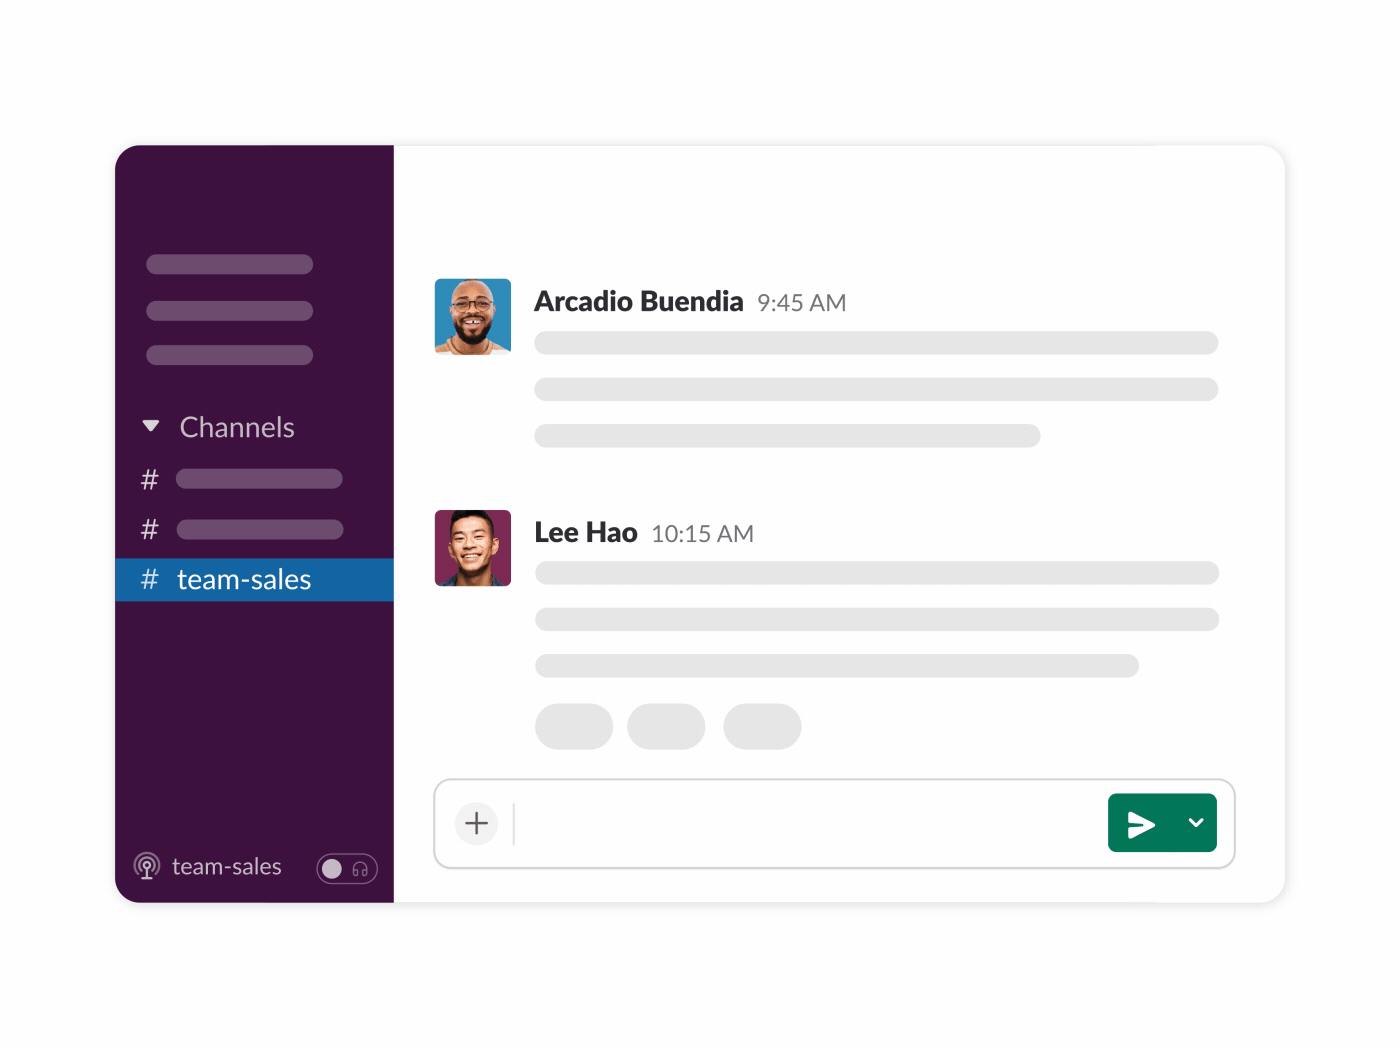 einen Huddle in einem Slack-Channel starten, um live zu kommunizieren und deinen Bildschirm zu teilen